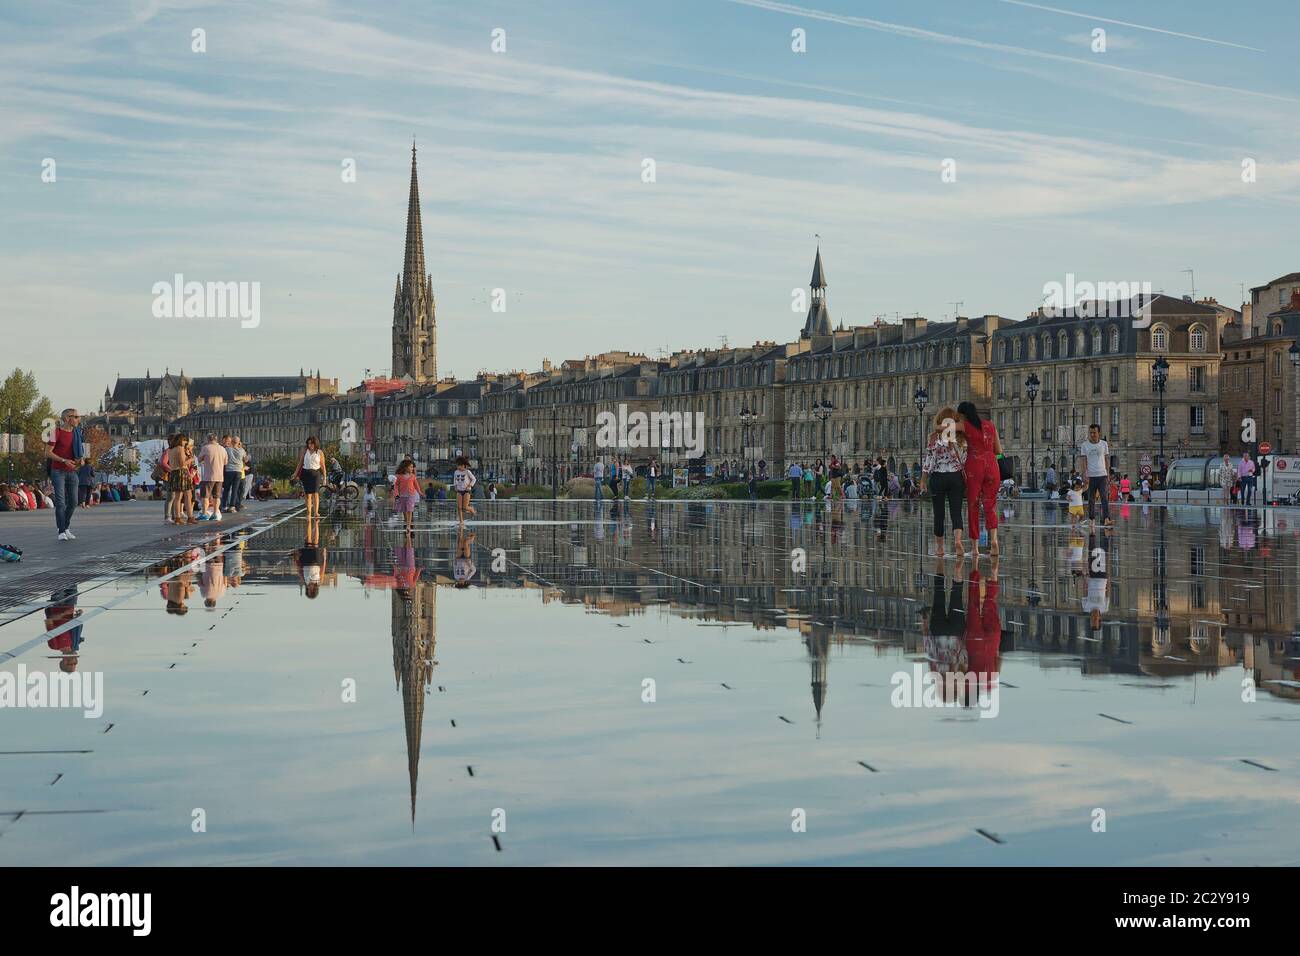 La gente si diverte e si rinfrescano in una calda giornata estiva, nella fontana a specchio di Bordeaux, Francia Foto Stock